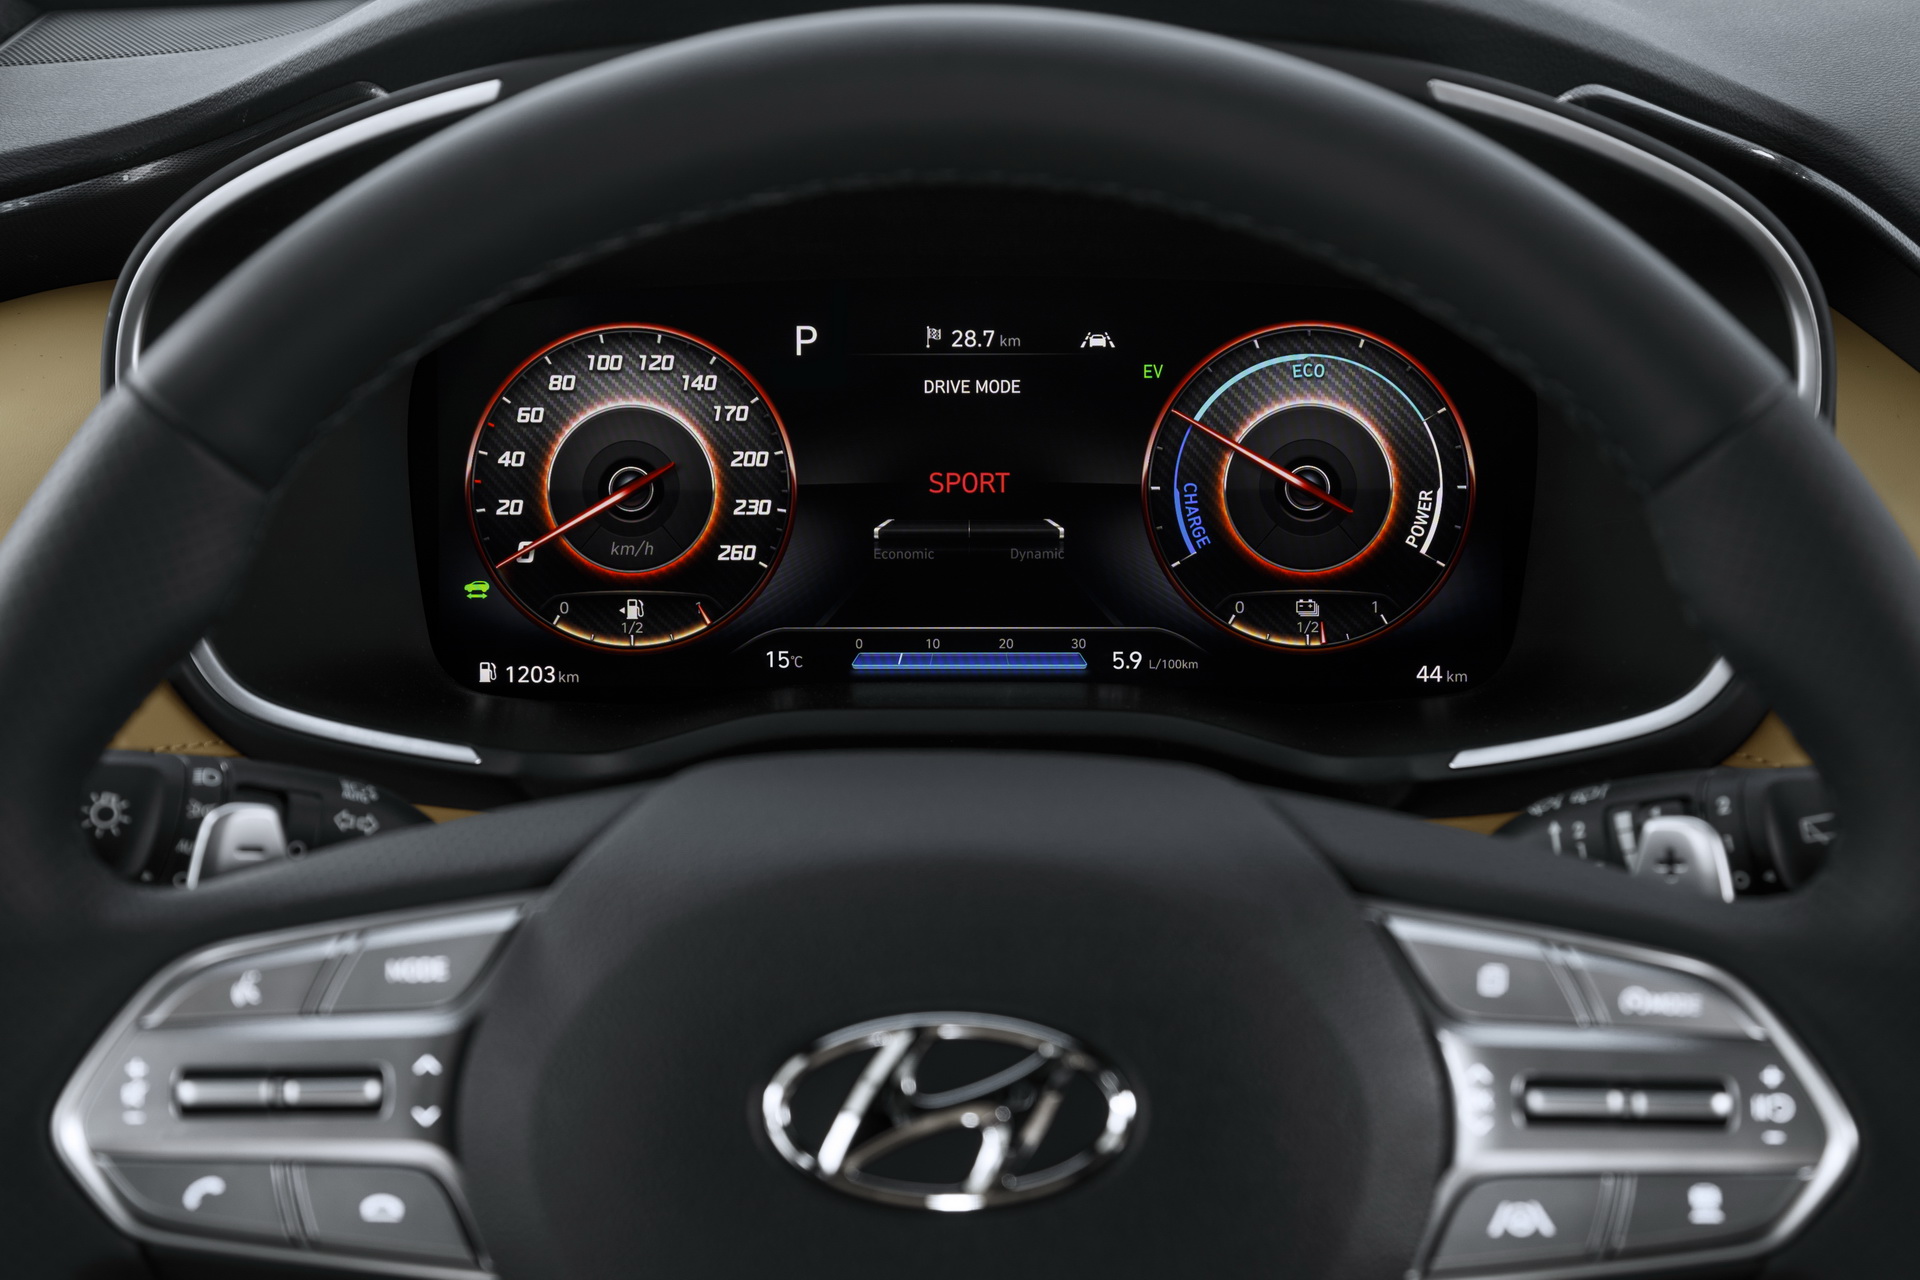 ดีไซน์ใหม่เพียบ Hyundai Santa Fe 2021 สุดยอดรถอเนกประสงค์ของทุกครอบครัว